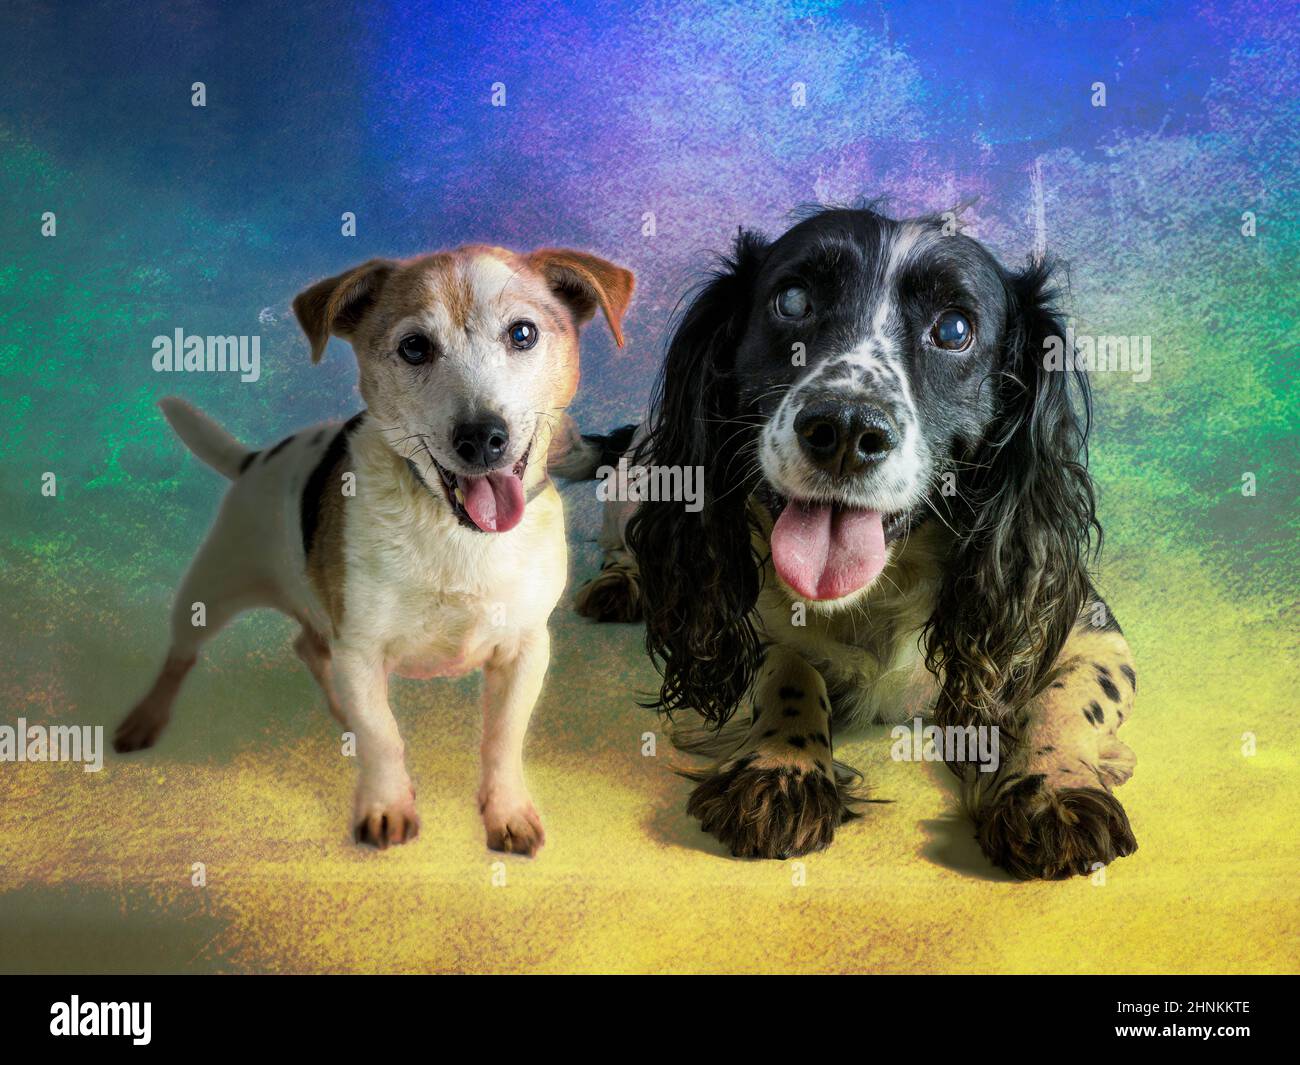 Zwei Hunde Studio-Fotoshooting mit einem bunten Hintergrund Stockfoto